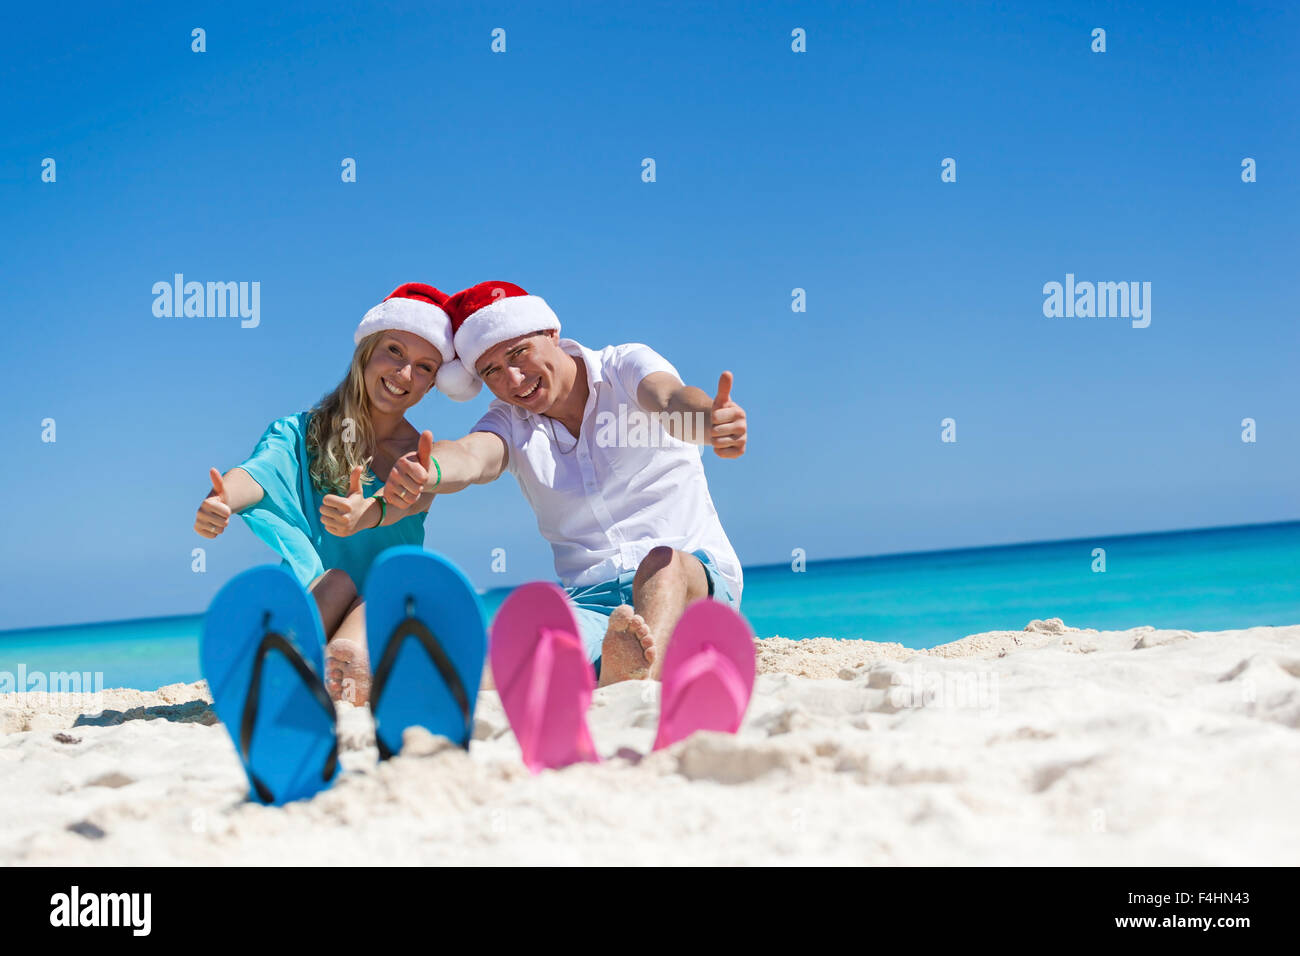 Karibik Weihnachten Urlaub am sandigen Strand. Zwei paar Flip flops stehen in einem Sand auf Hintergrund mit emotionalen paar Stockfoto